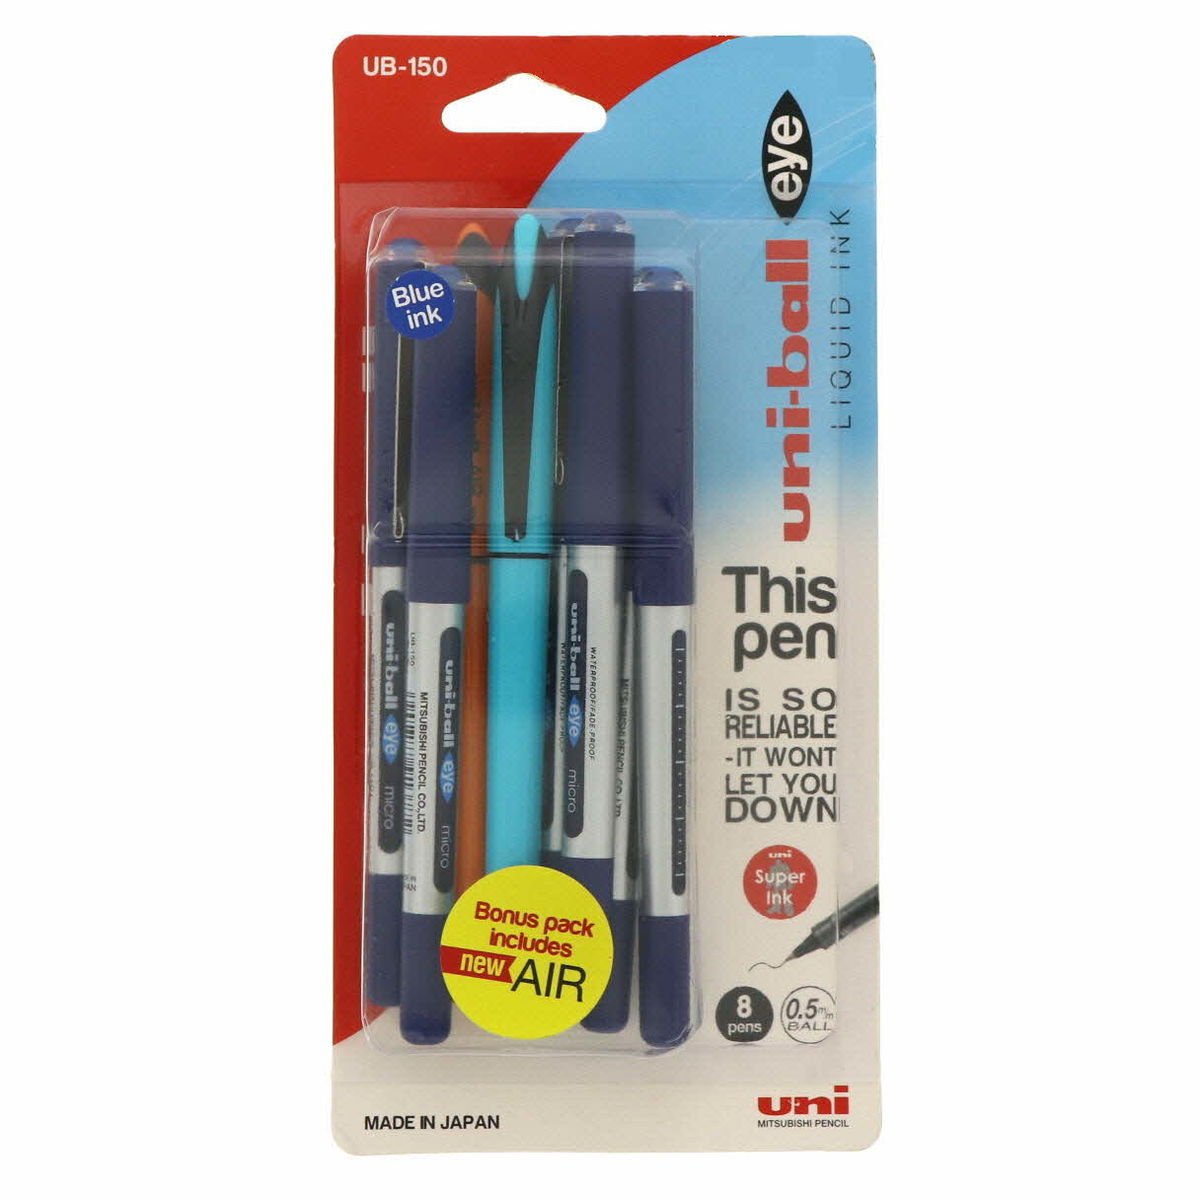 يوني-بول أقلام حبر سائلة 150 6 حبات + قلم حبر 2 حبة